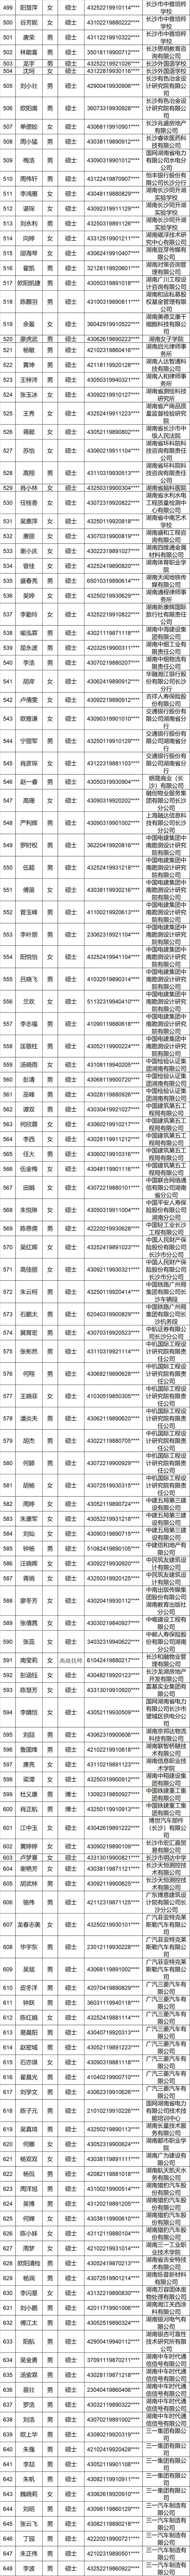 长沙购房补贴名单（2019年3月-2019年5月）